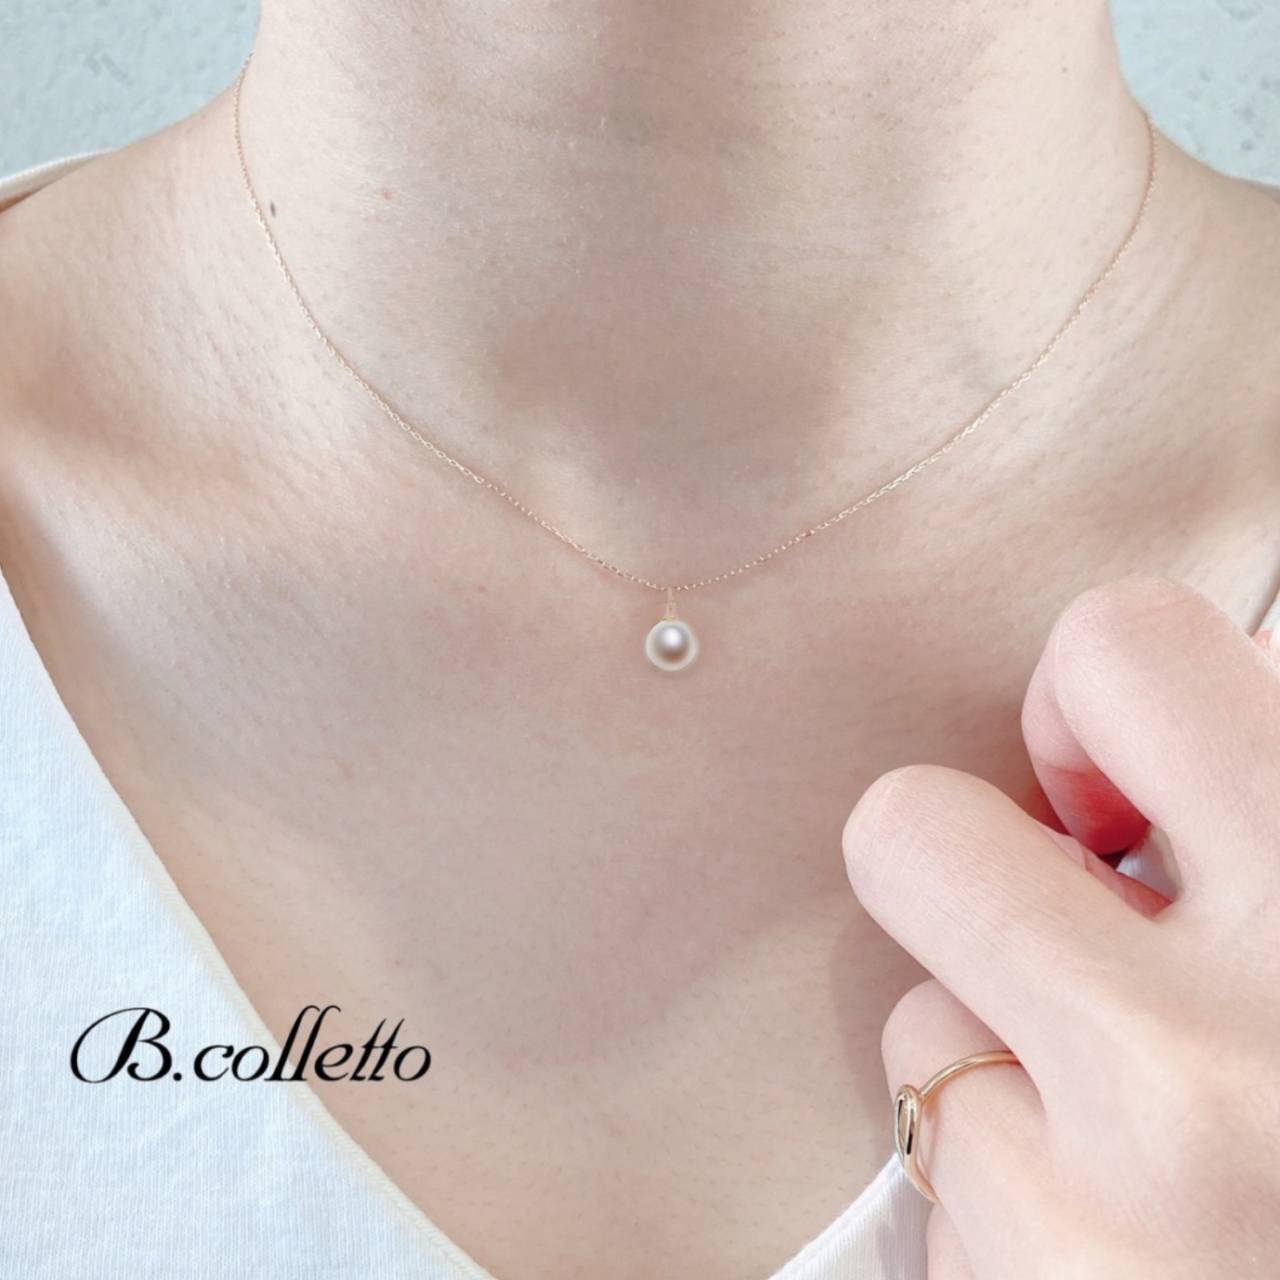 シンプルな一粒真珠のネックレスは、初めてのデートにオススメです。